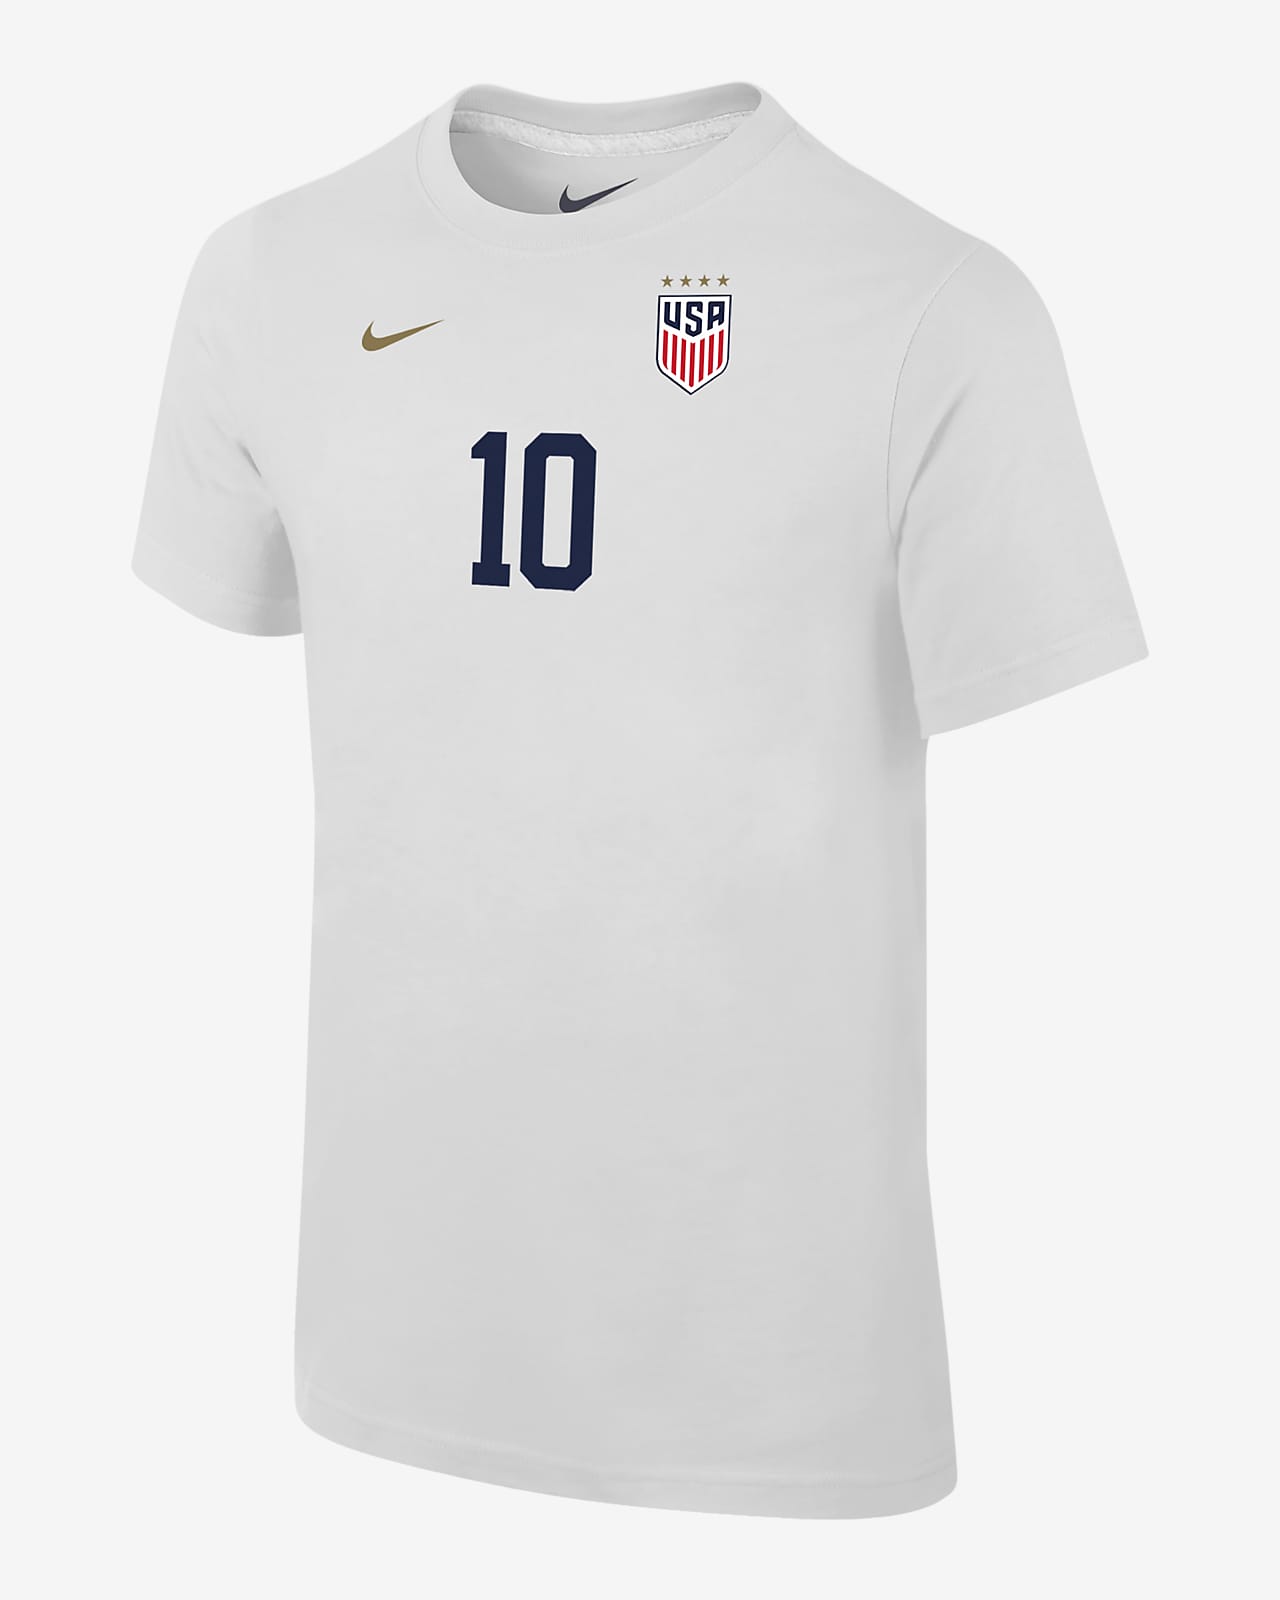 Lindsey Horan USWNT Big Kids' Nike Soccer T-Shirt